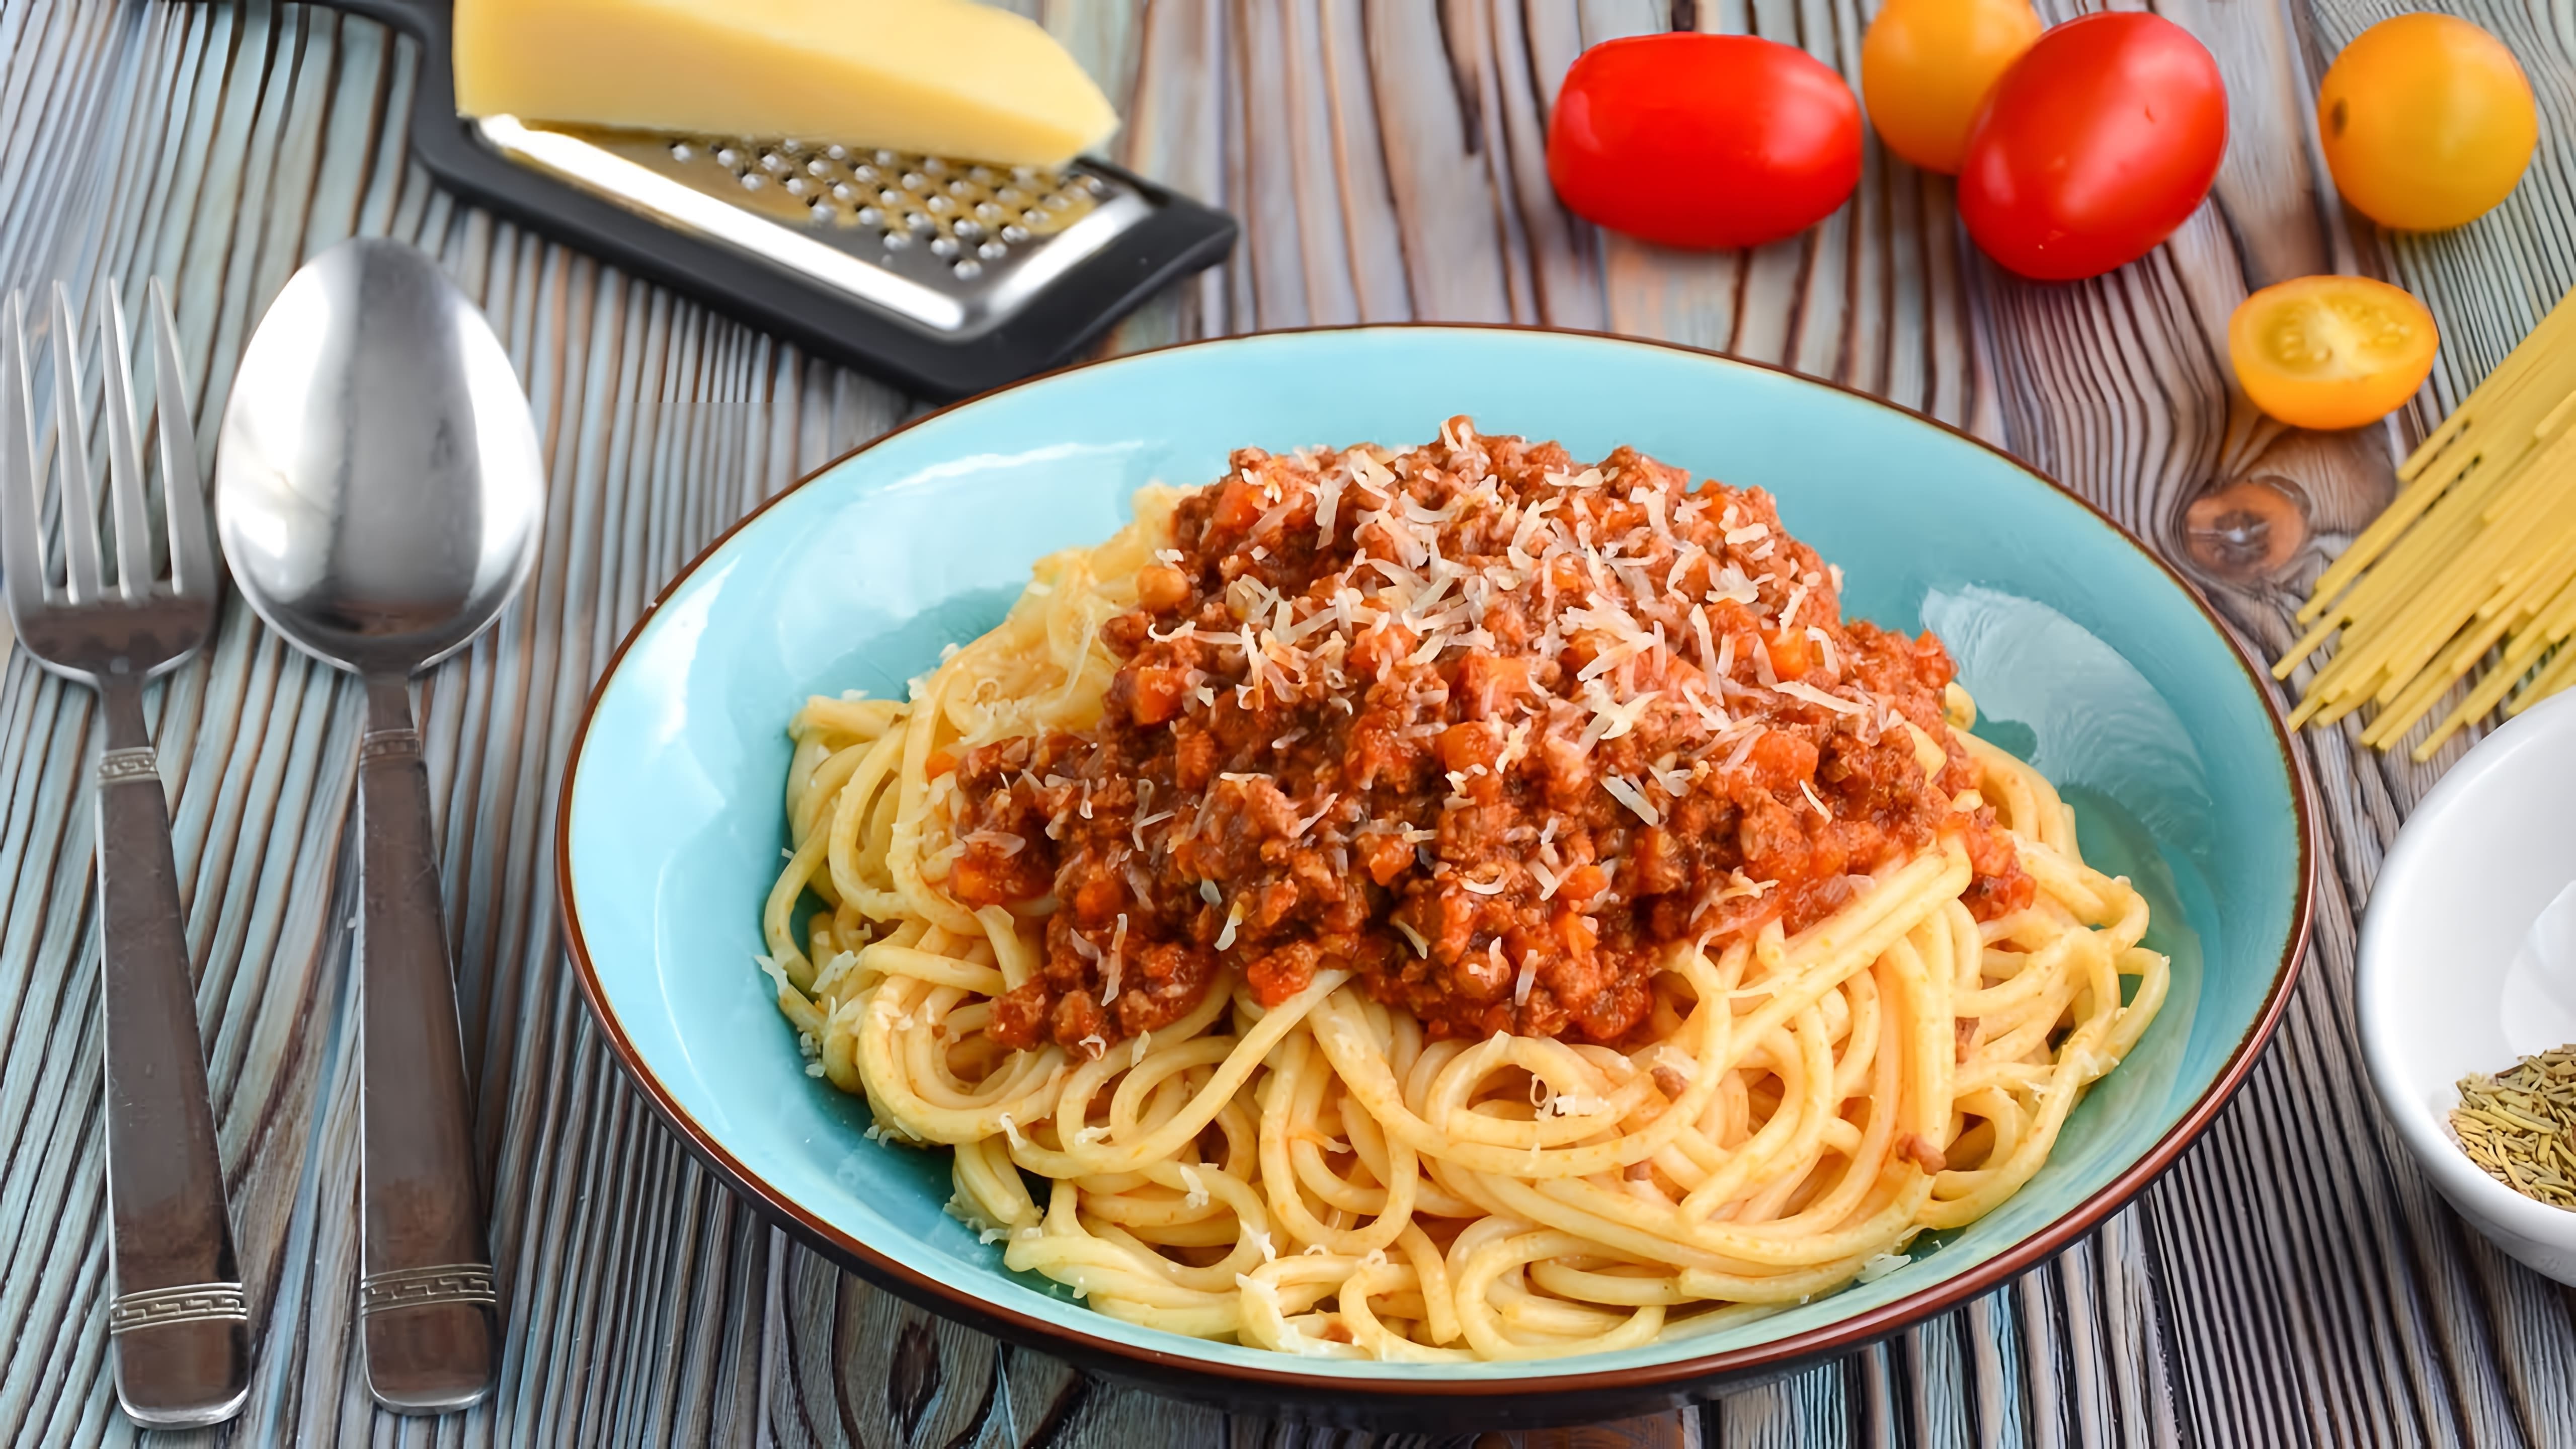 В этом видео демонстрируется процесс приготовления классического итальянского блюда - спагетти болоньез